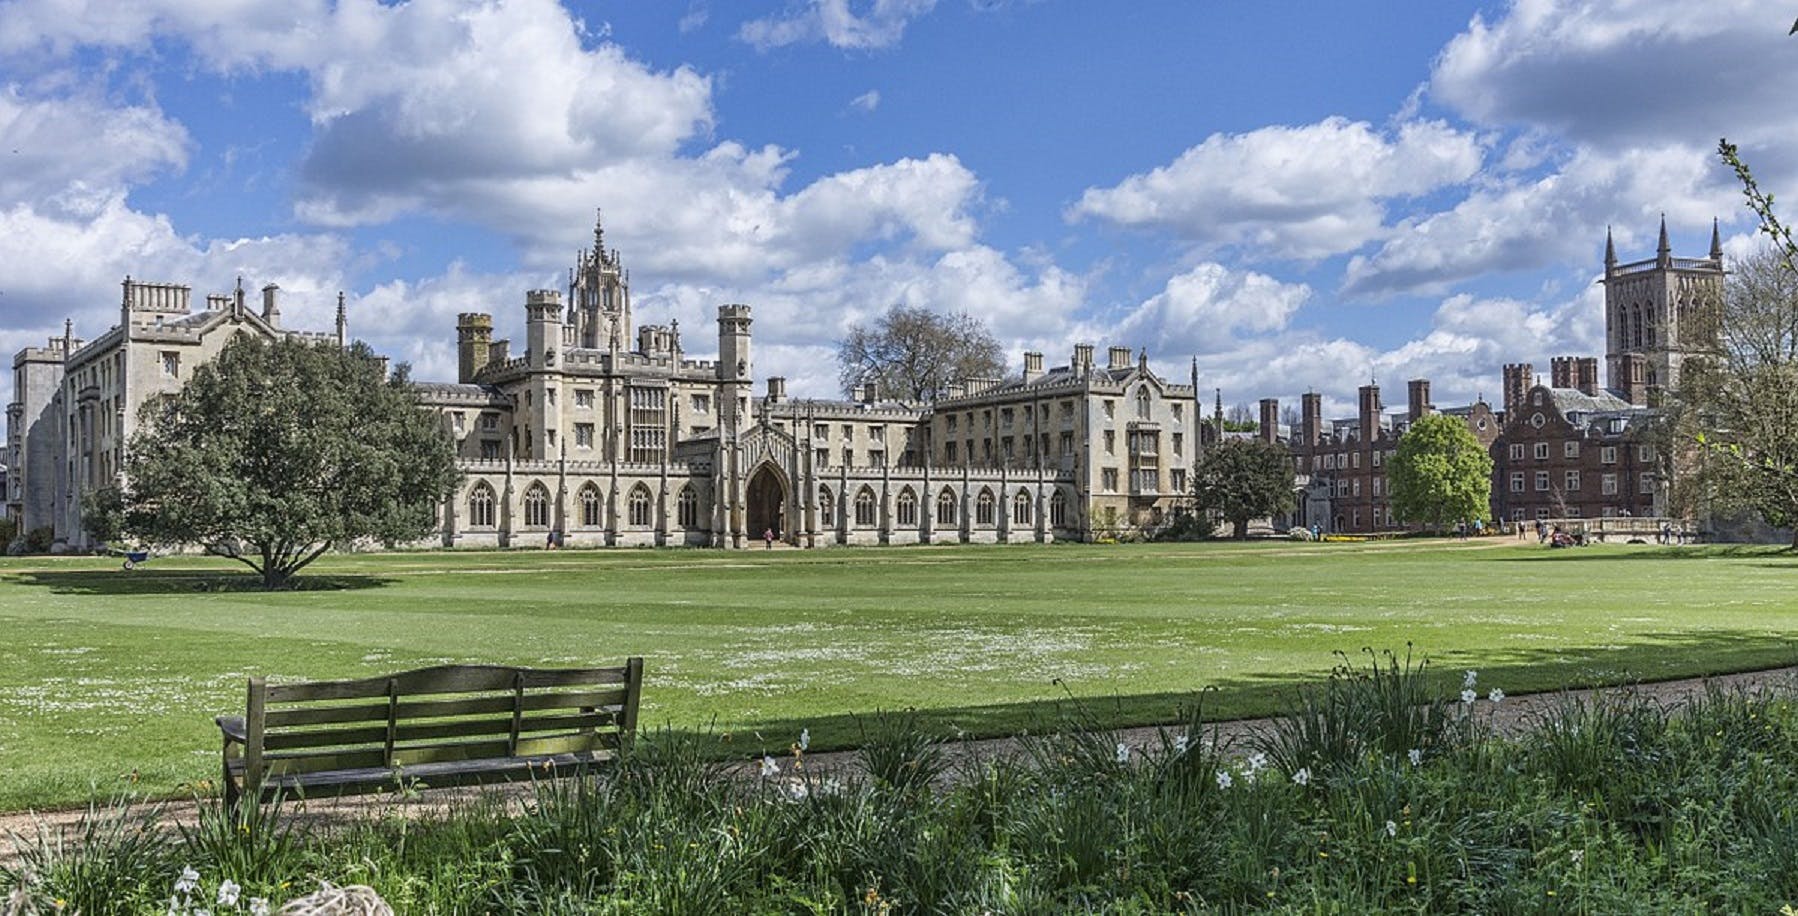 Tajne stowarzyszenie Cambridge, najlepsze miejsca i gra miejska z ukrytymi klejnotami